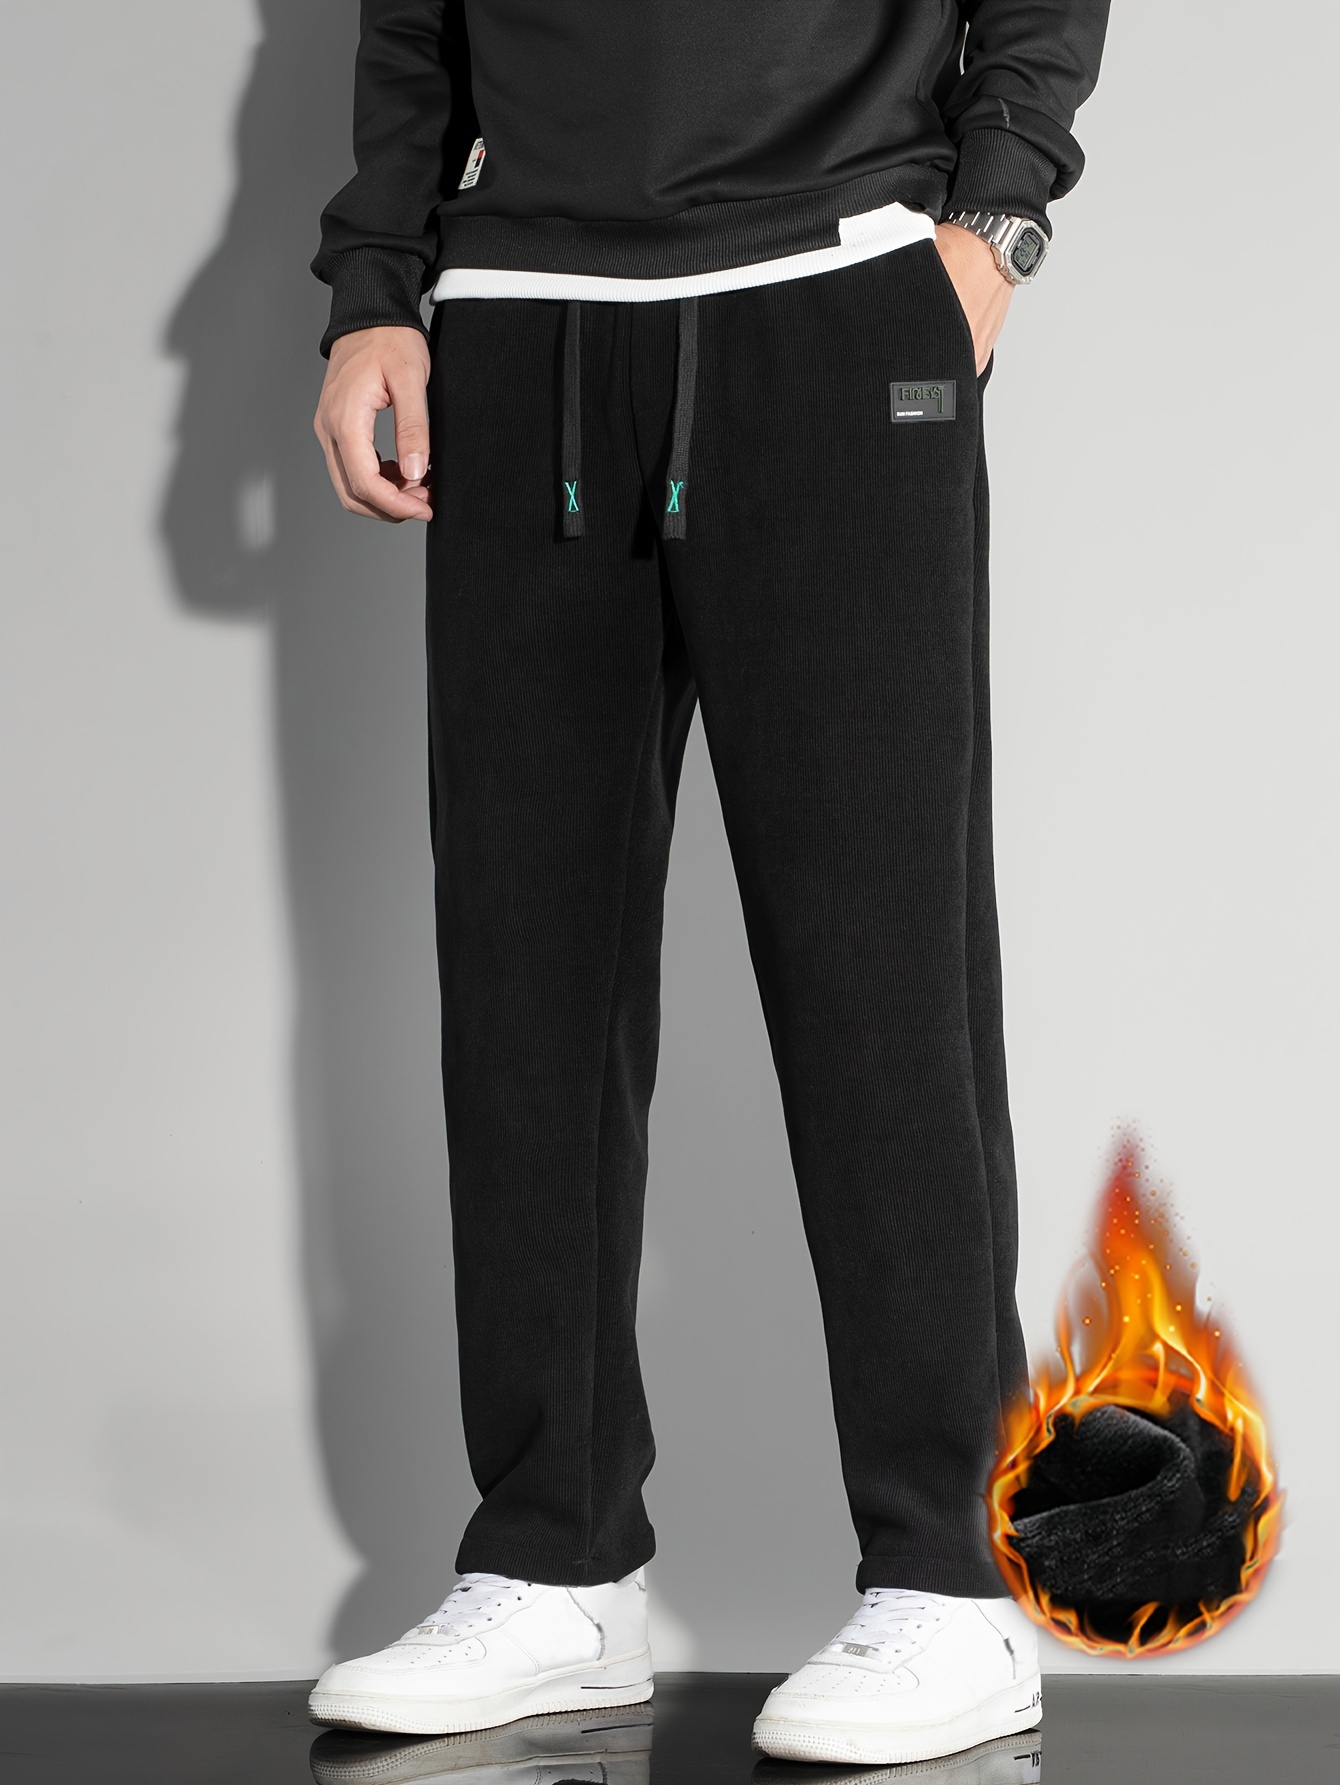 Acheter Pantalon doux athlétique doublé polaire pour homme, jogging épais,  ample et chaud, hiver